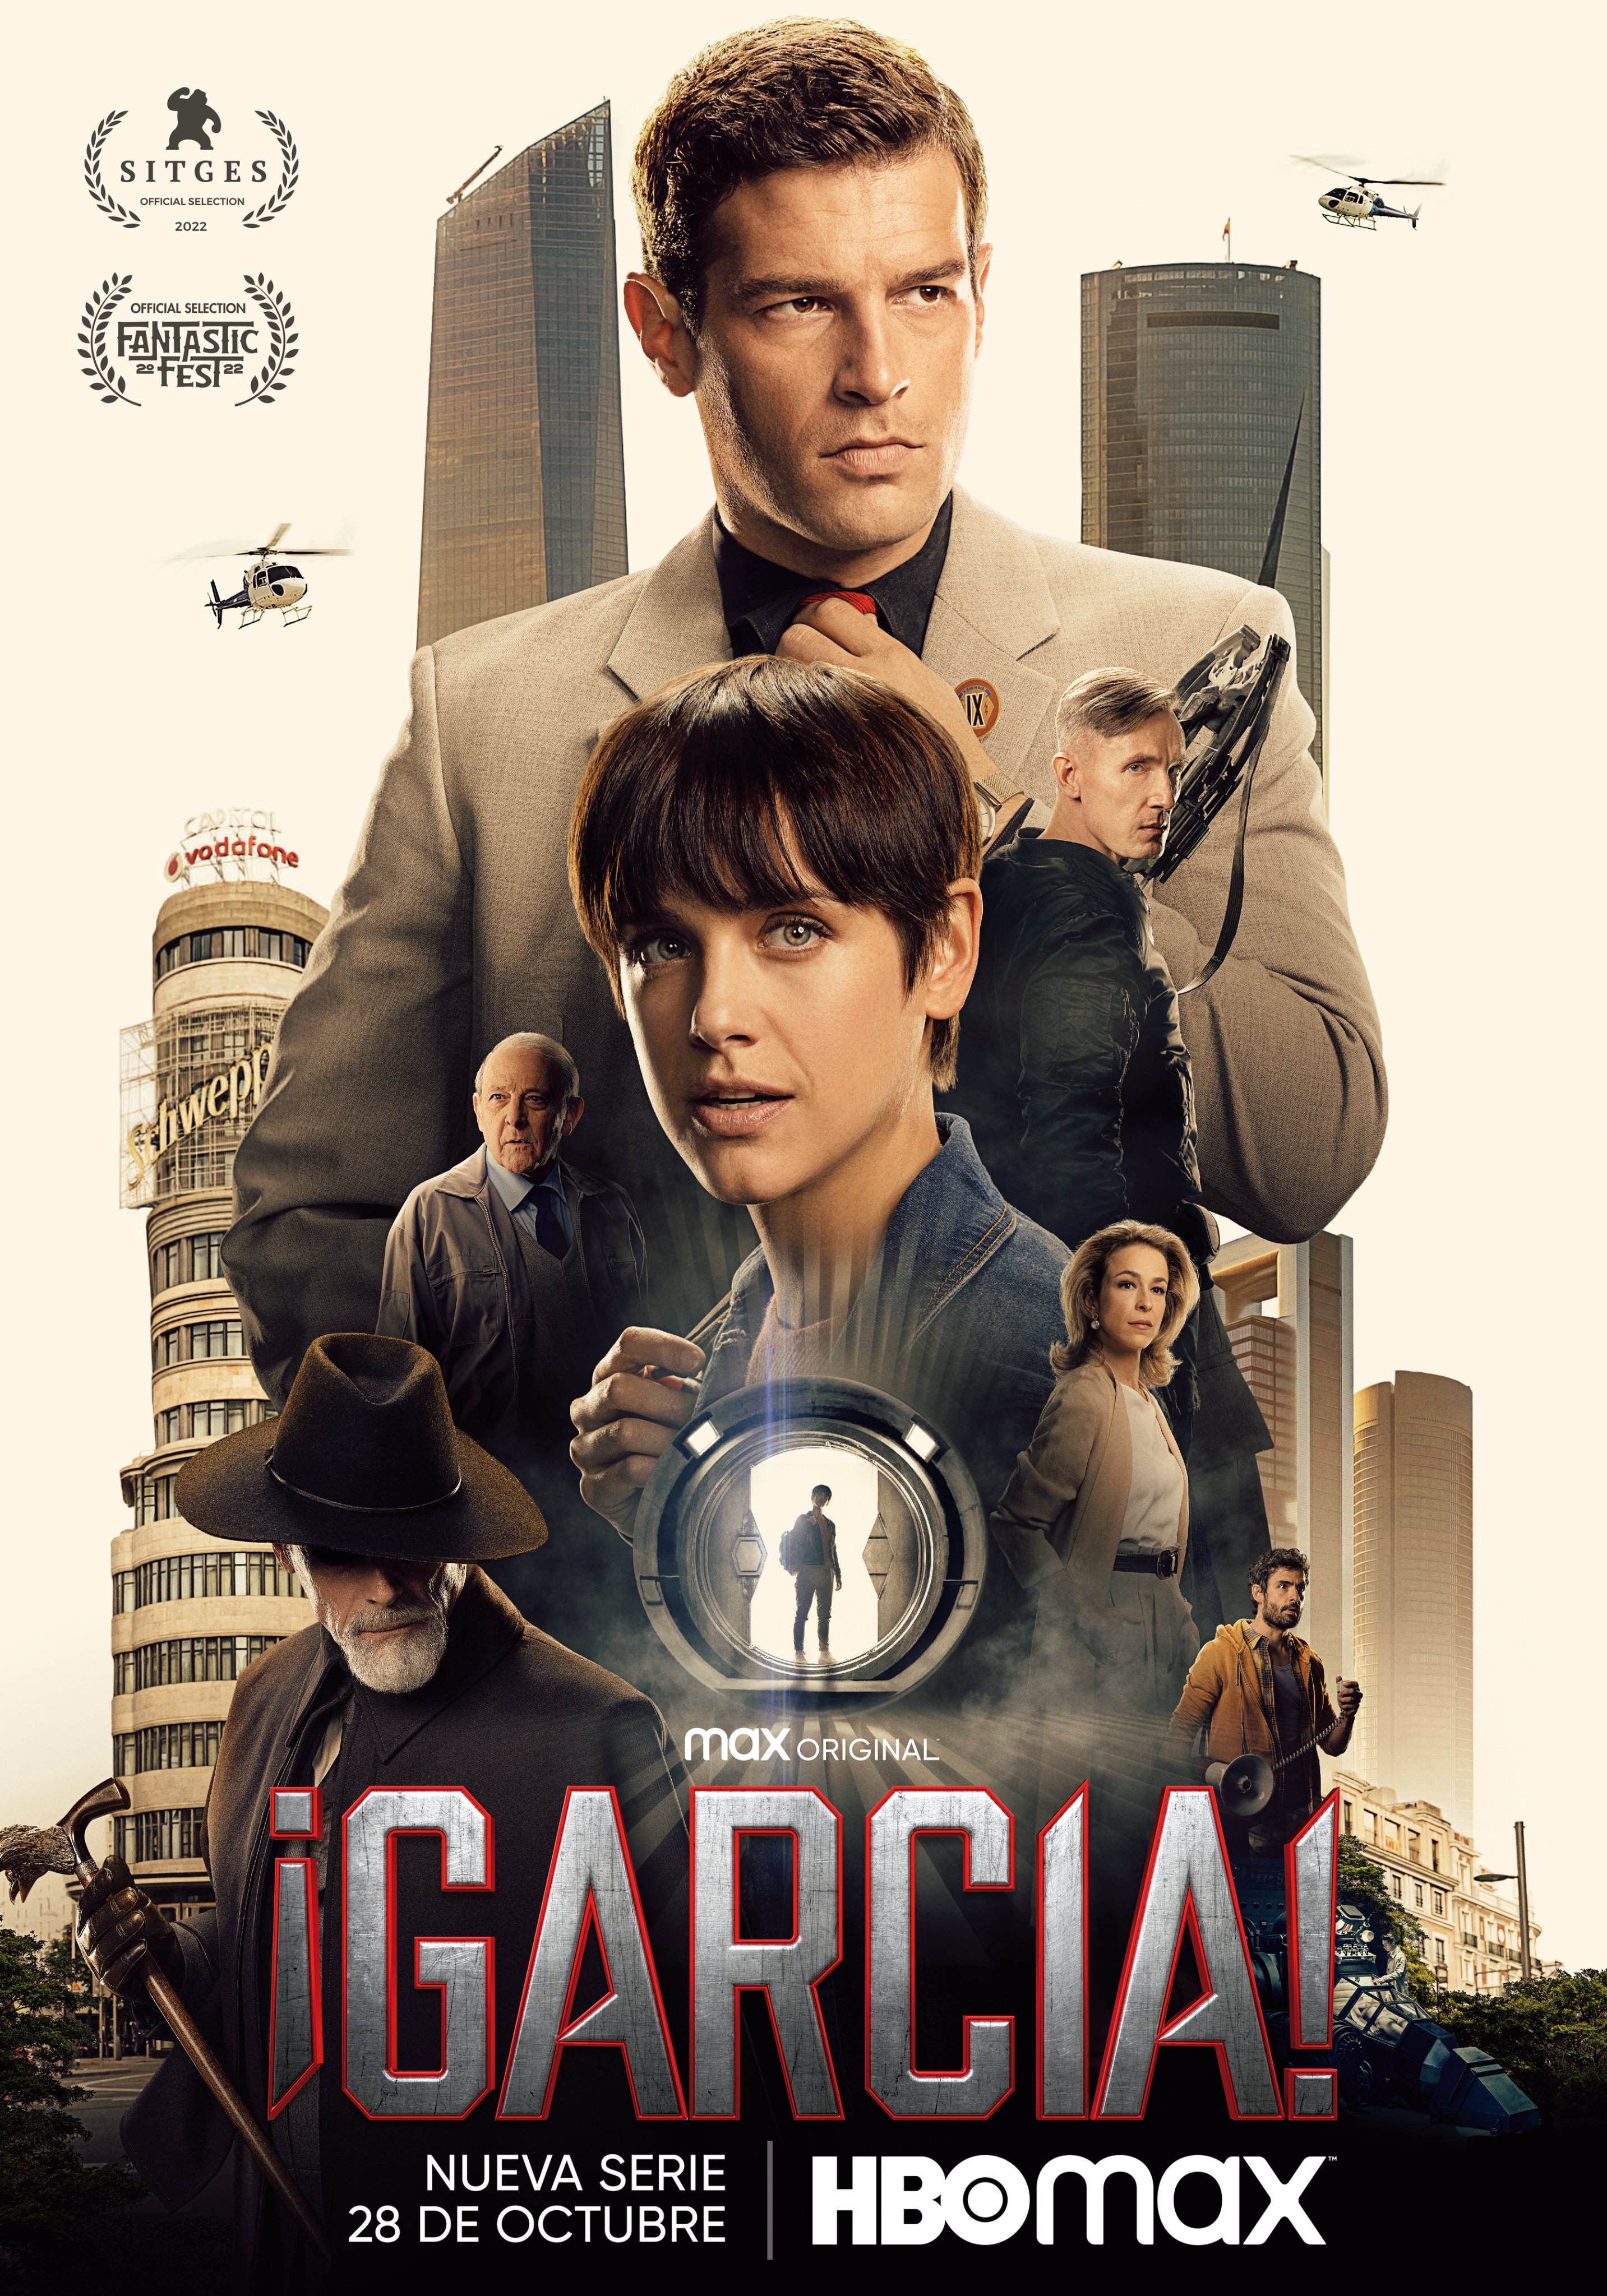 García! Season 1 Episode 1